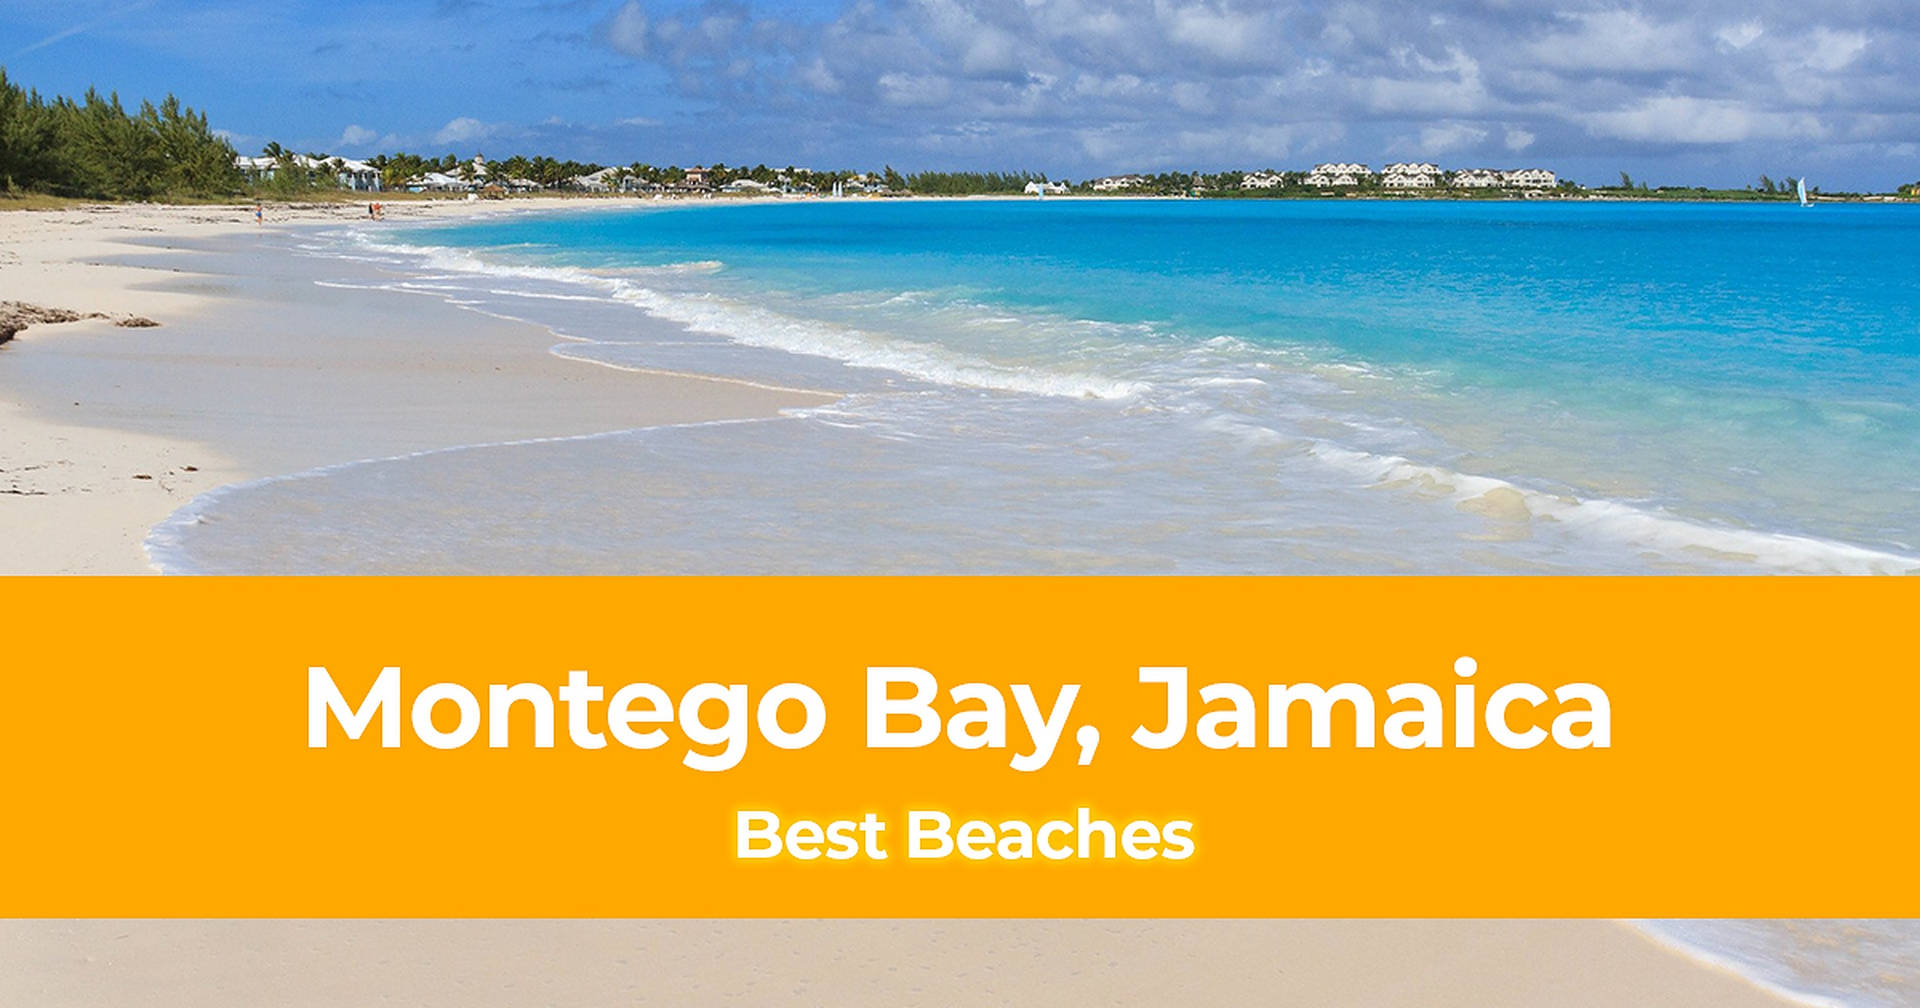 Pósteramarillo De La Playa De Jamaica. Fondo de pantalla